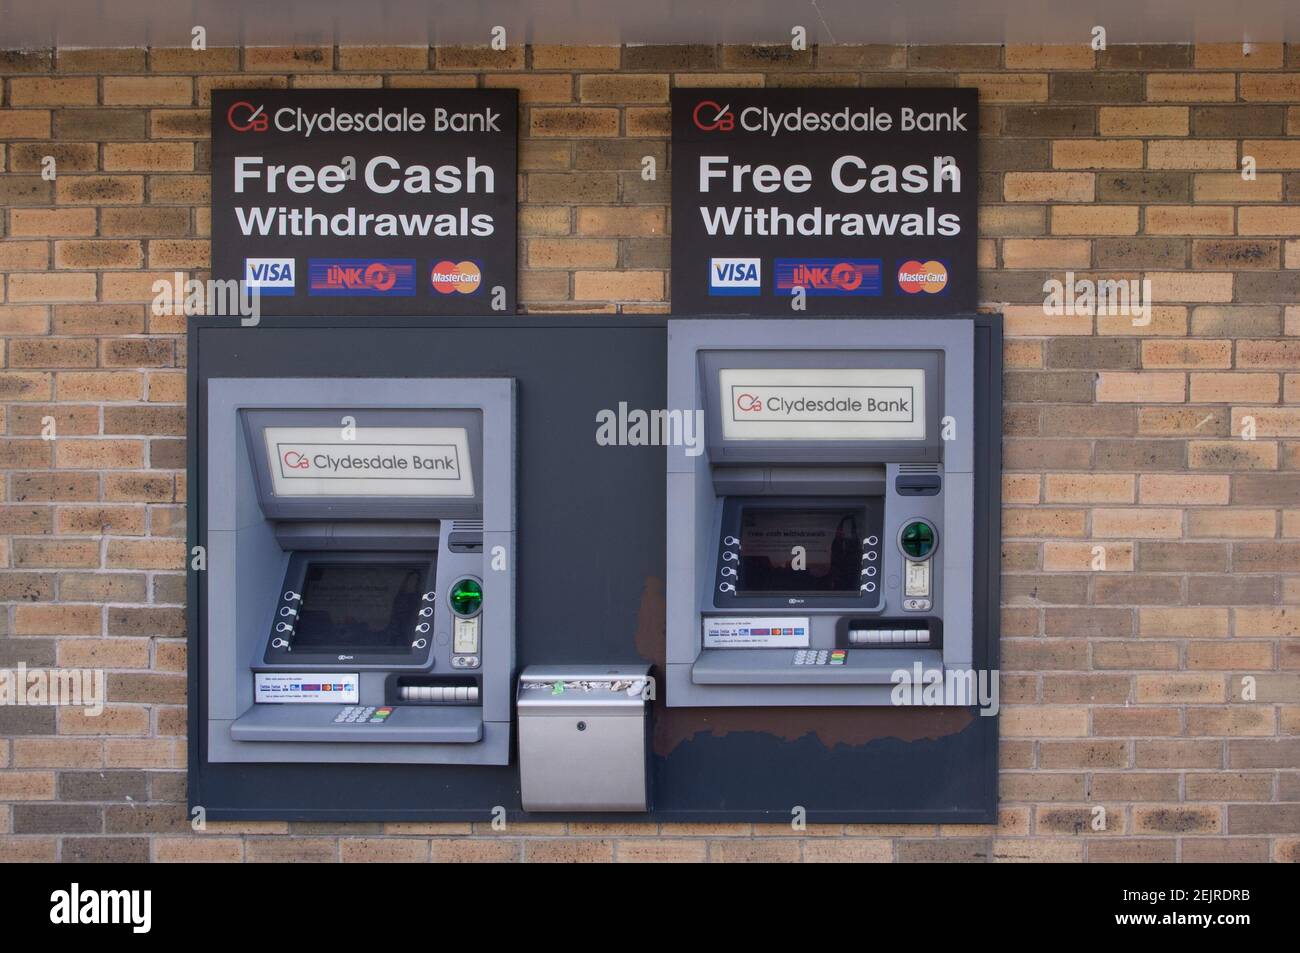 Automatisierte Geldautomaten für Clydesdale Bank, Name jetzt durch Virgin Money ersetzt Stockfoto